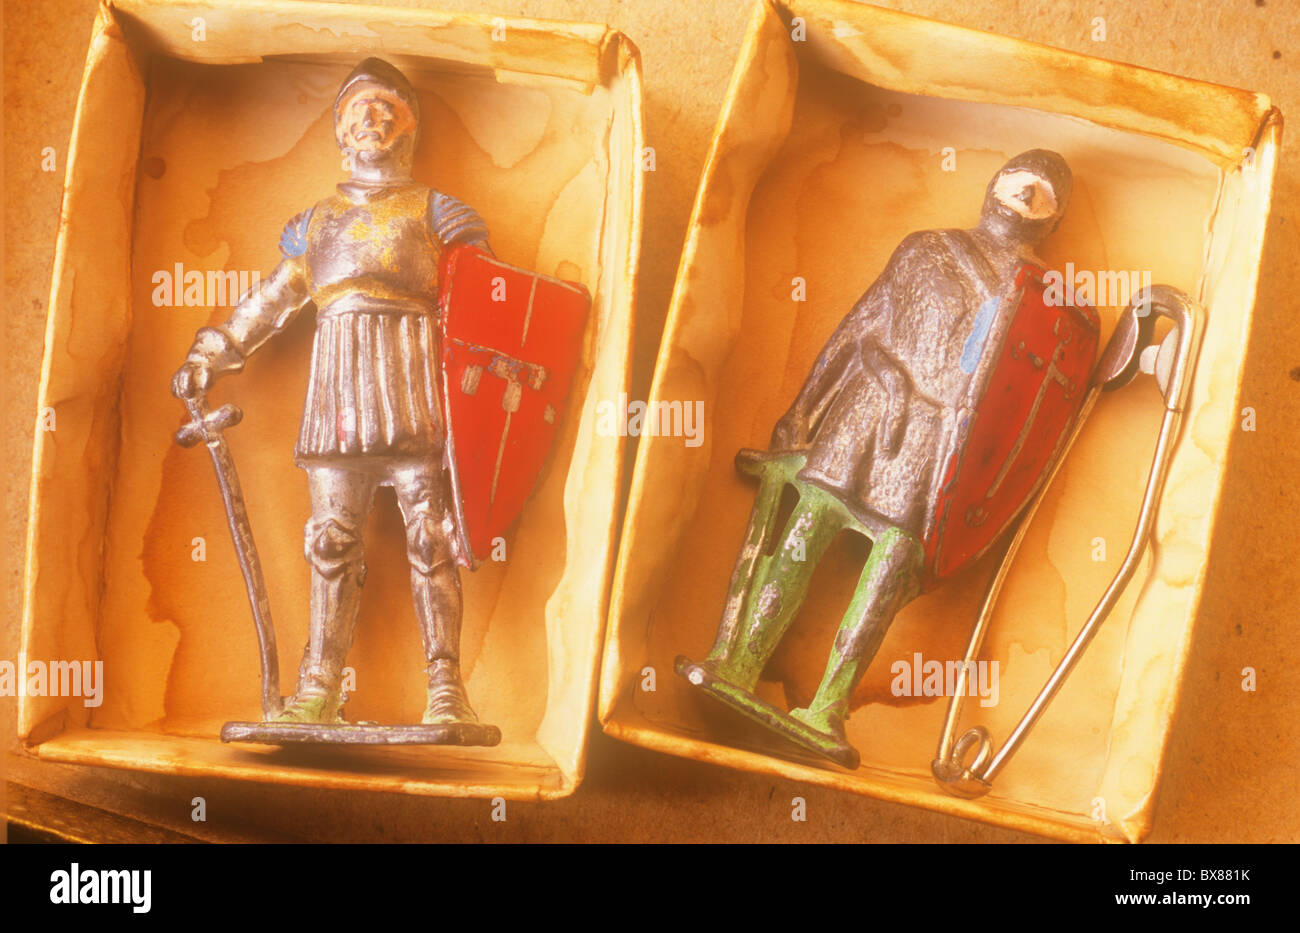 Nahaufnahme von zwei zerkratzt Metall Blei-Modelle der Ritter in Rüstung mit Schwert und Schild in gefärbten Kärtchen Tabletts liegen Stockfoto